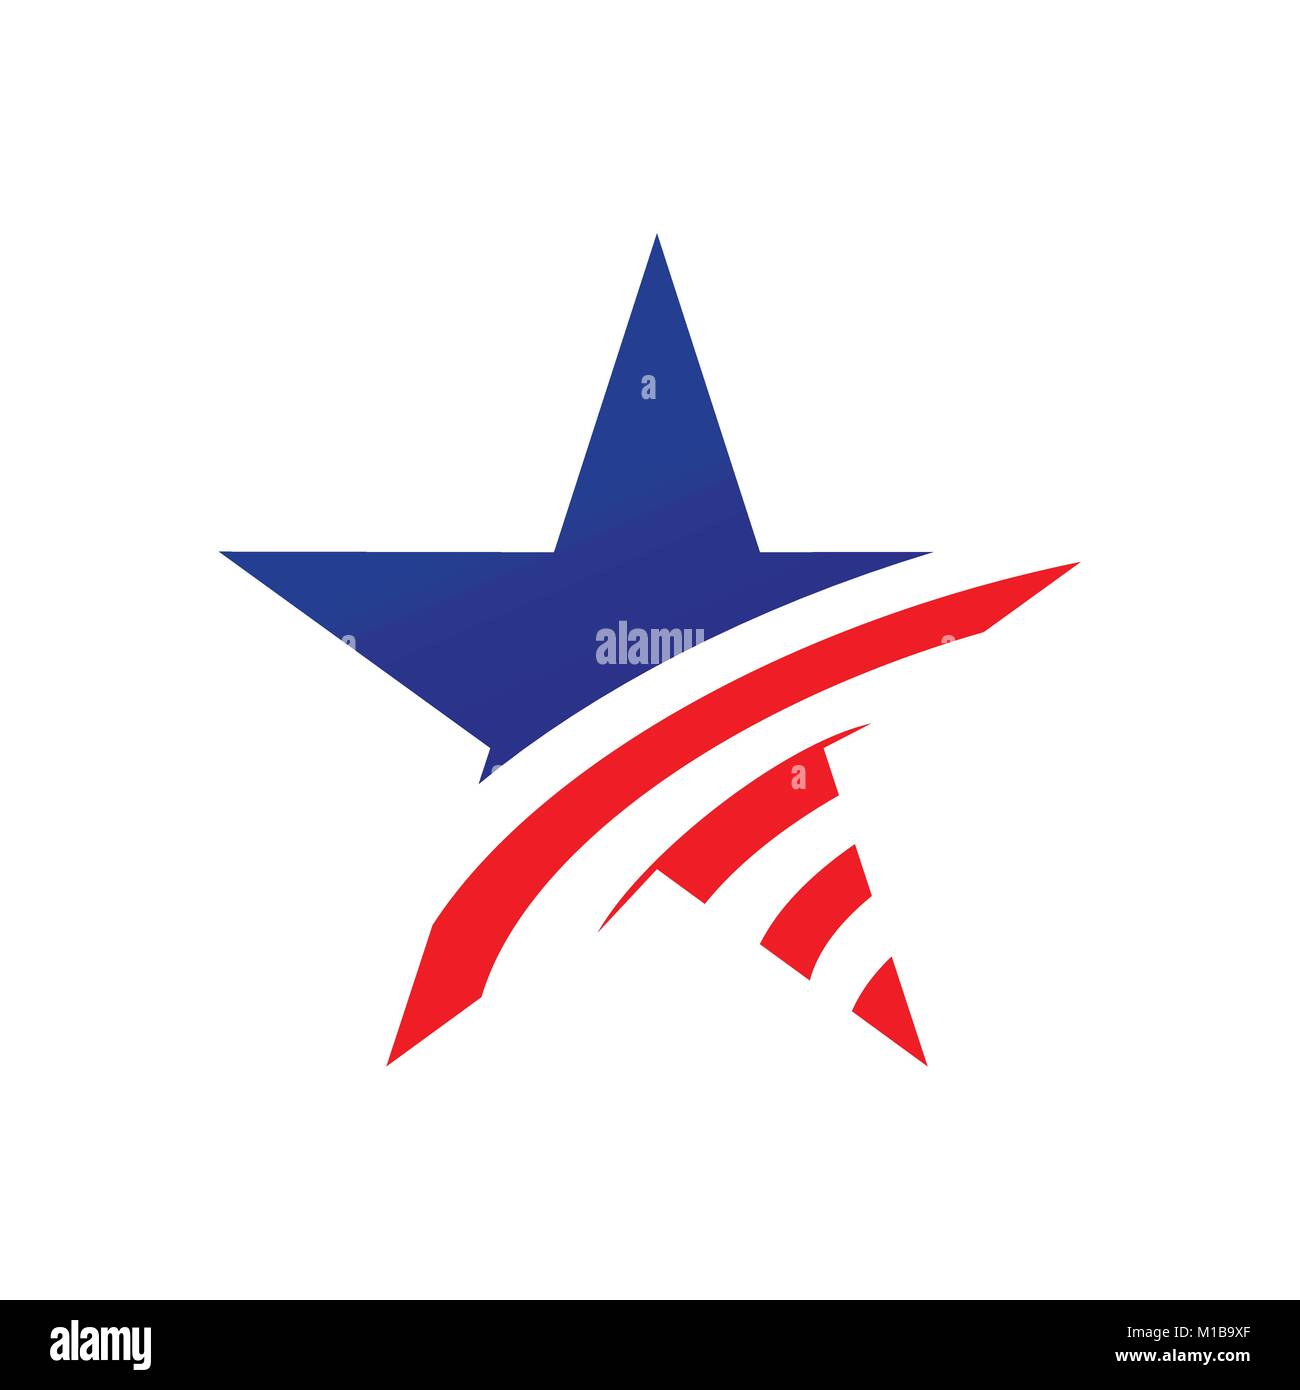 American Star simbolo Creative Vector Graphic Design Illustrazione Vettoriale